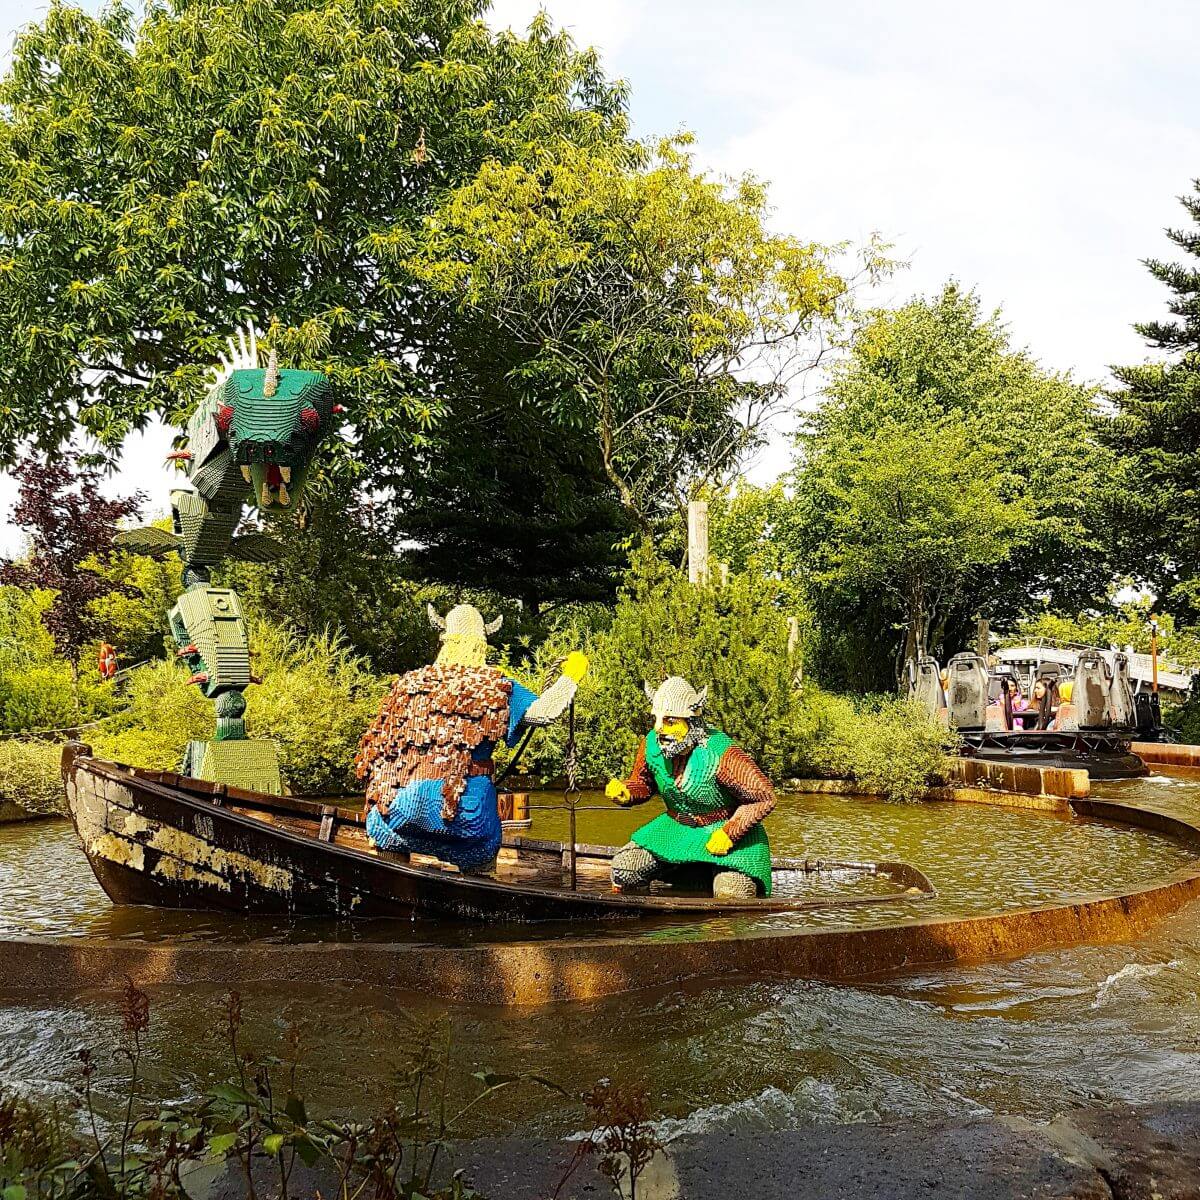 Legoland met kinderen: alles wat je wil weten, Knights Kingdom Vikings River Splash #leukmetkids #legoland #Denemarken #kinderen